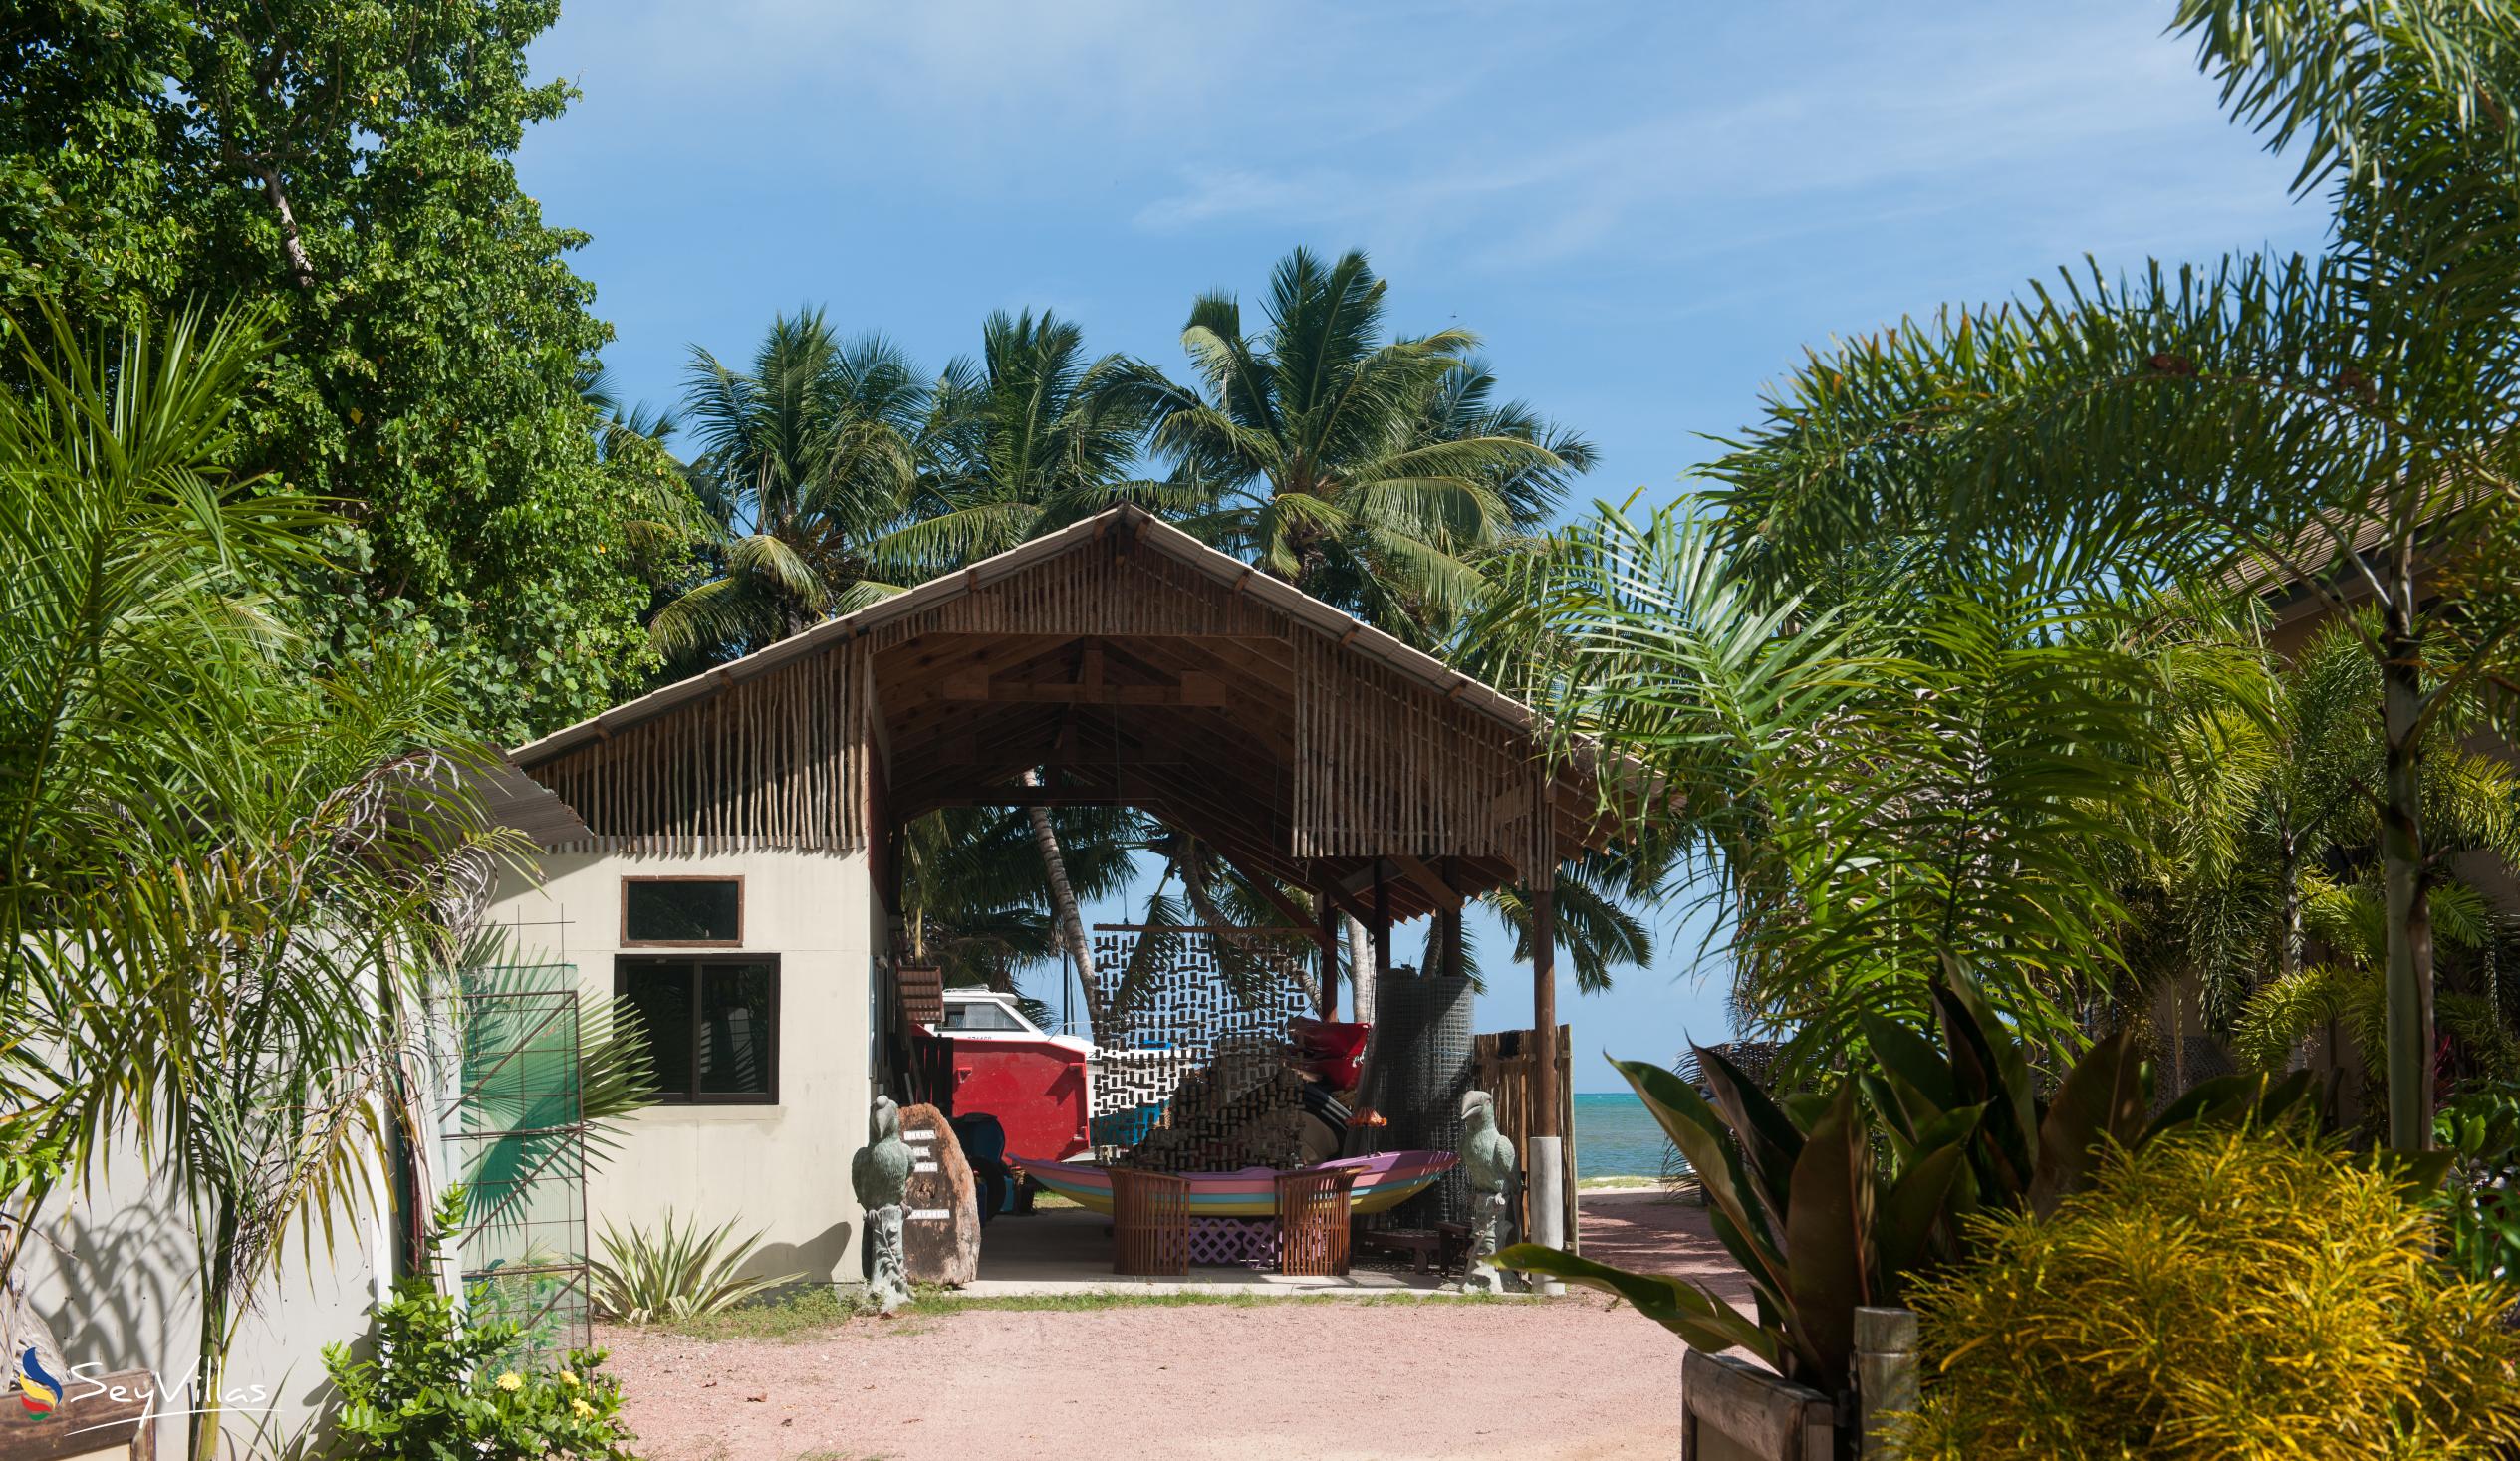 Foto 6: Villas des Alizes - Esterno - Praslin (Seychelles)